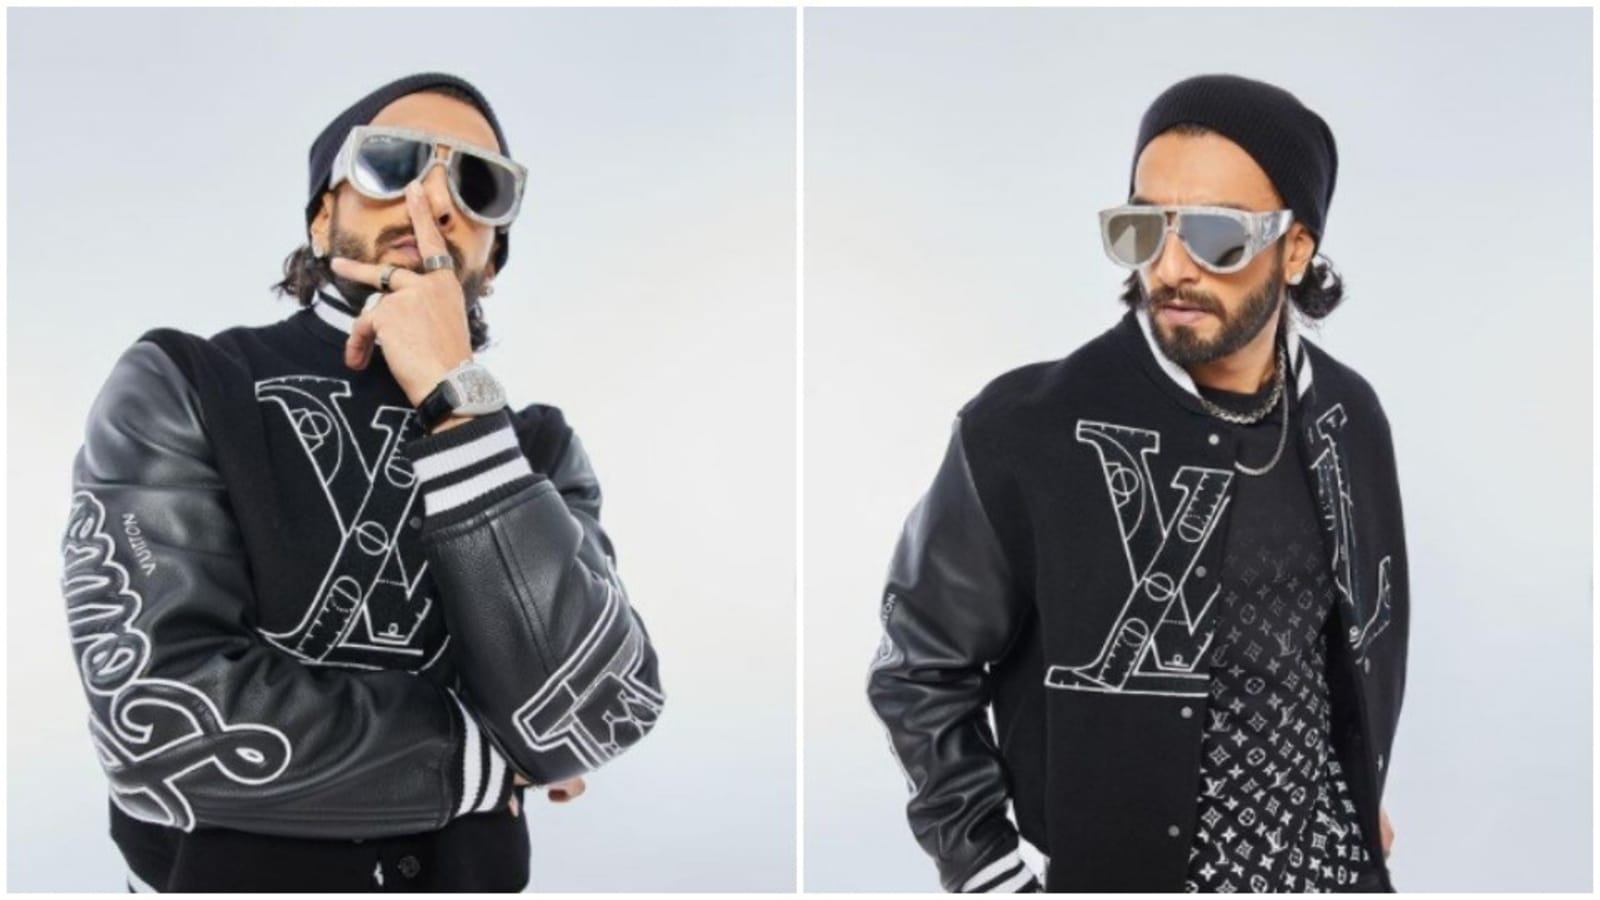 Ranveer Singh looks dapper in ₹1.4 lakh multicolour jersey jacket